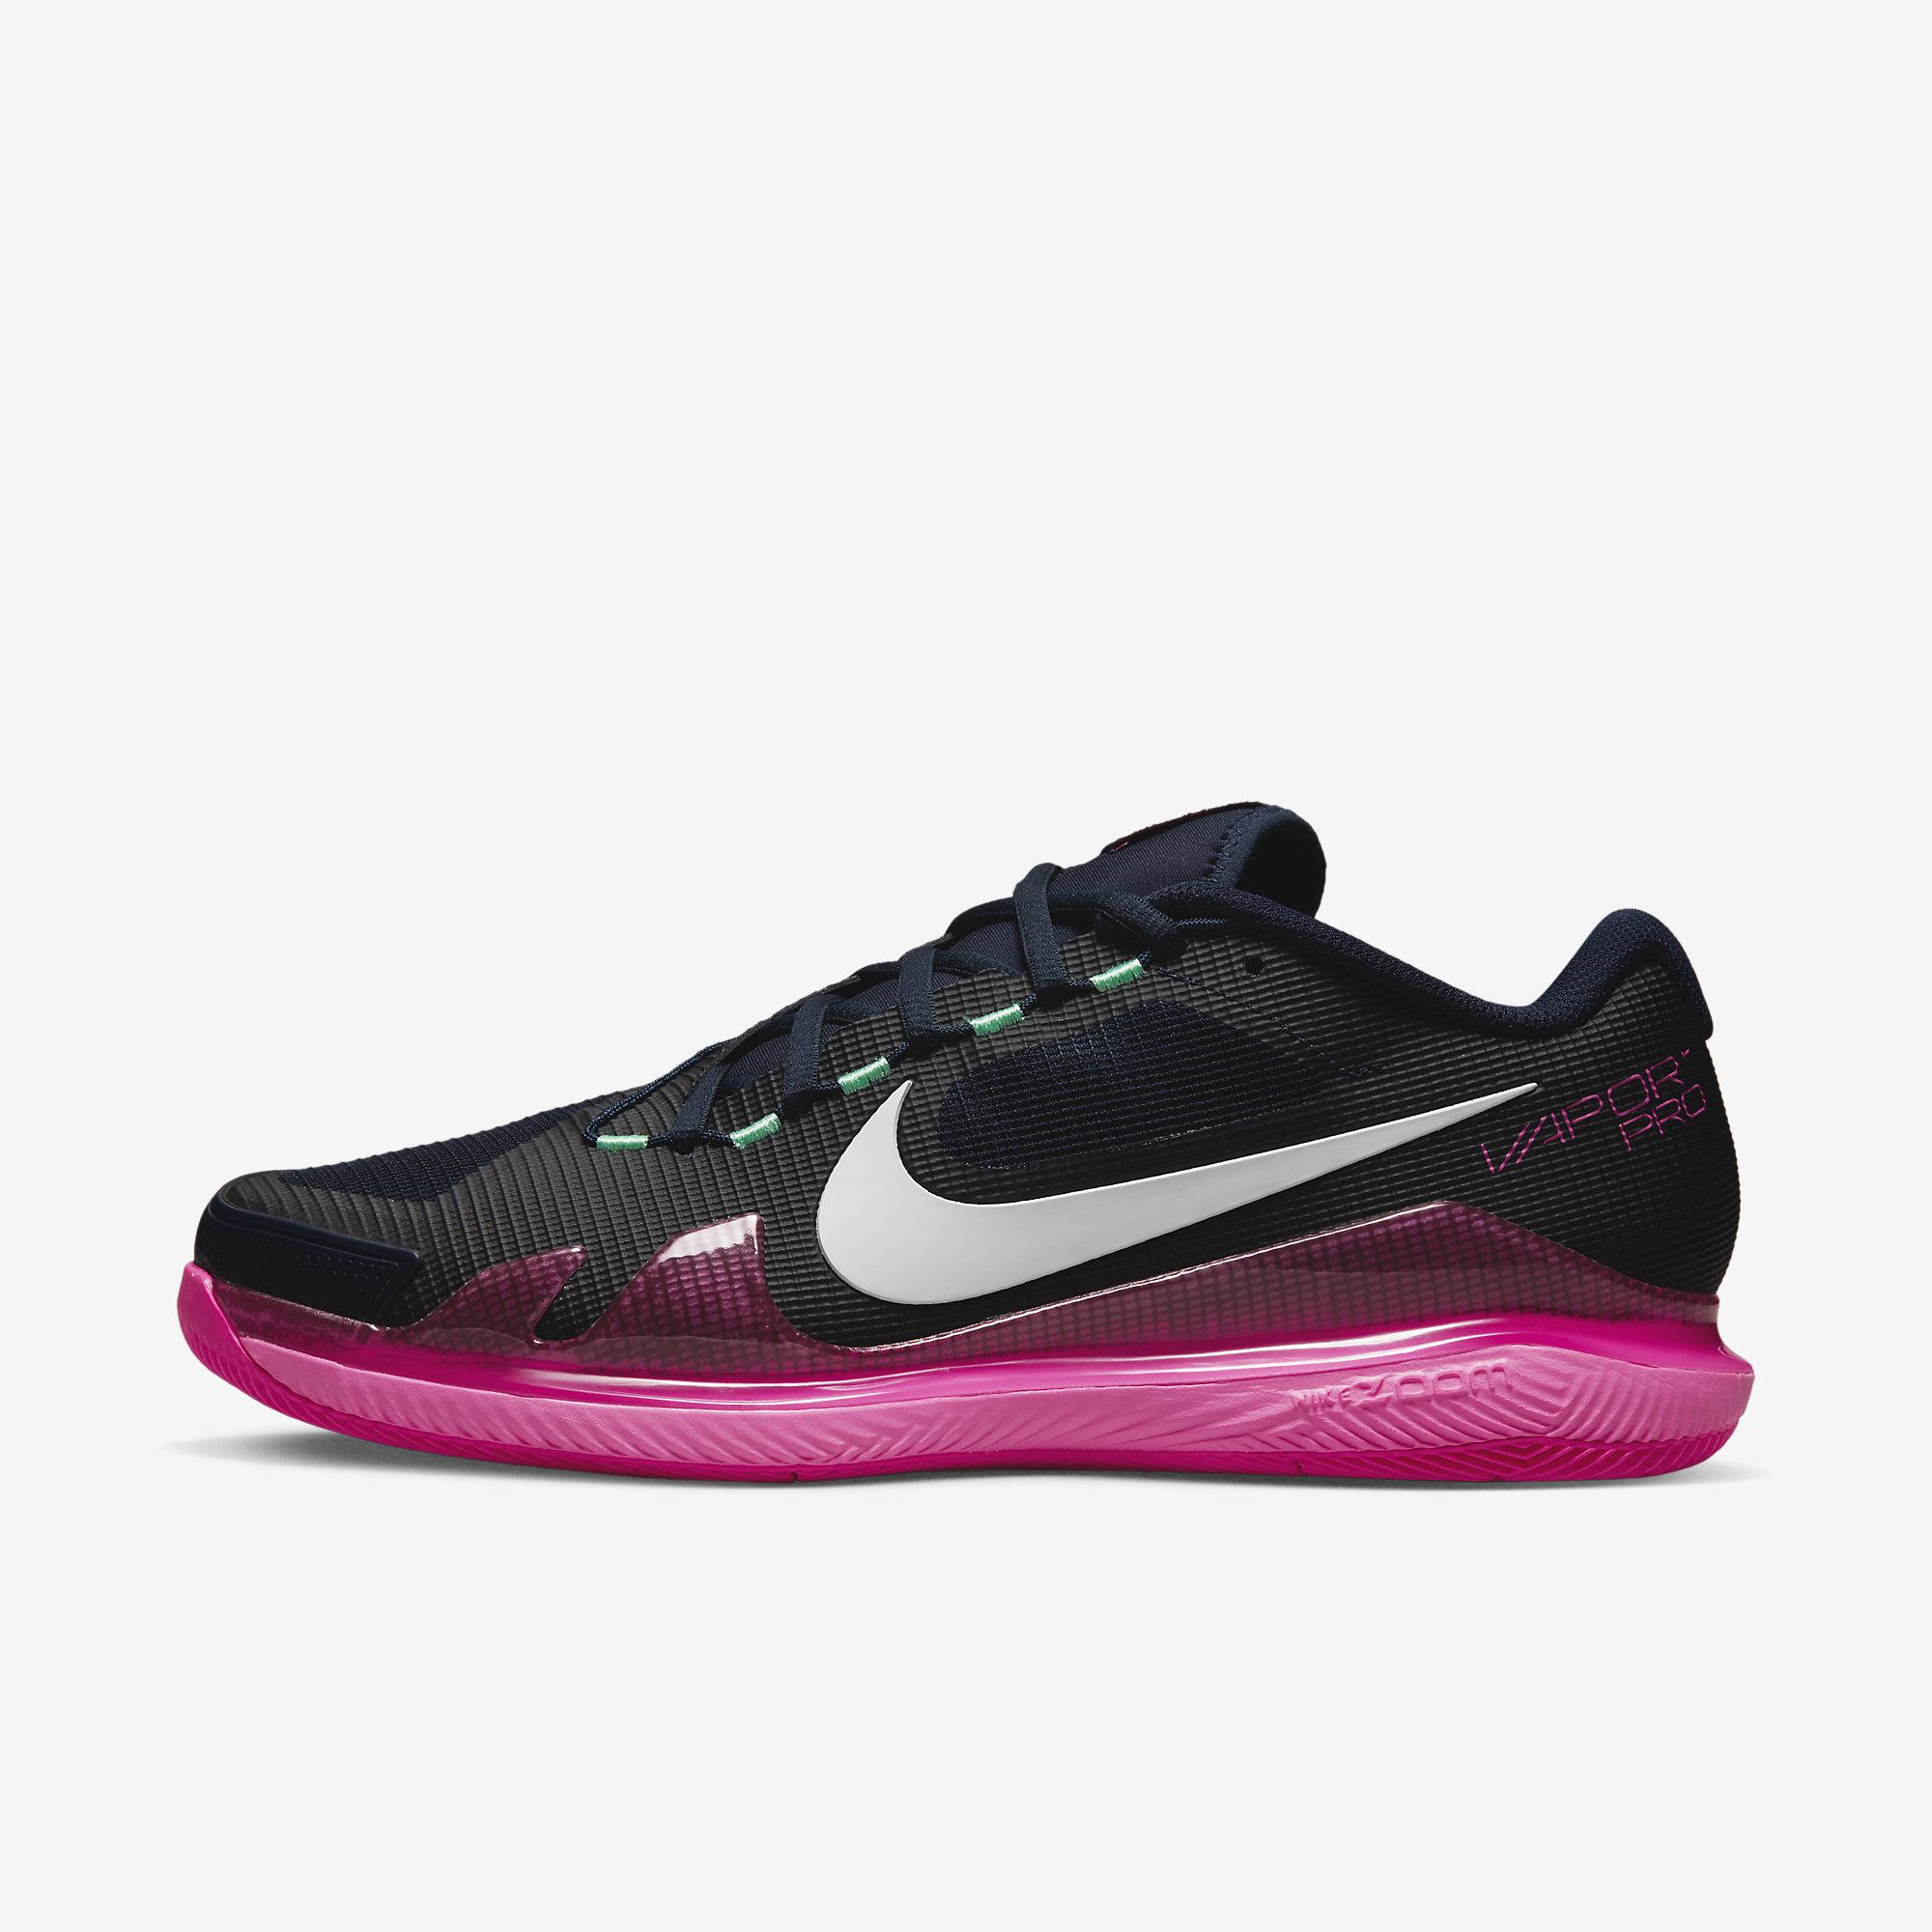 Nike Mens Air Zoom Vapor Pro - Obsidian/Hyper Pink - Tennisnuts.com